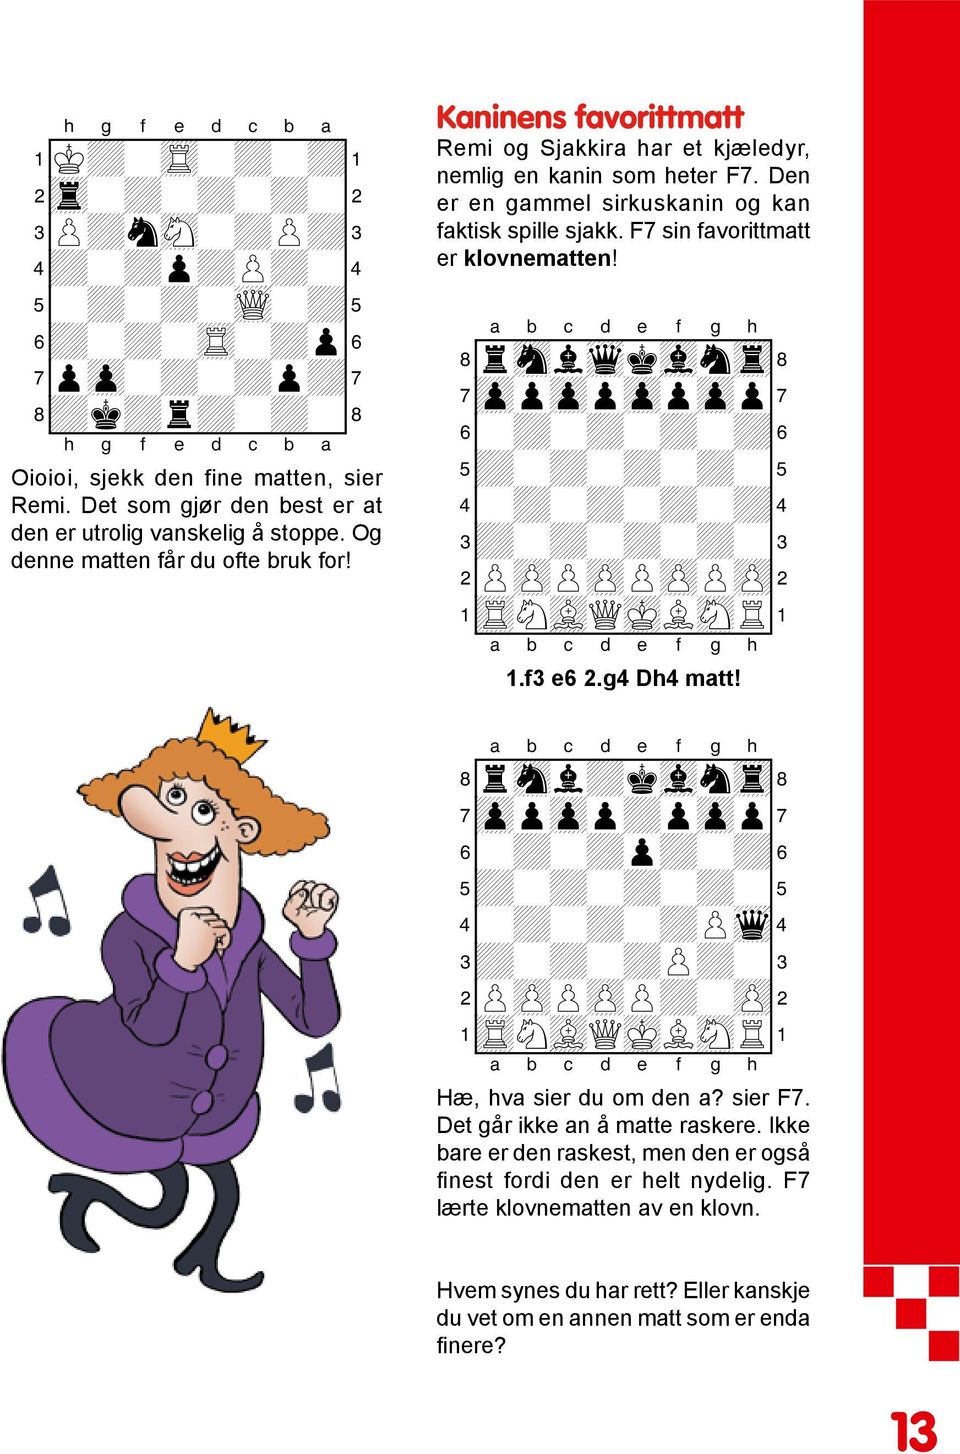 Den er en gammel sirkuskanin og kan faktisk spille sjakk. F7 sin favorittmatt er klovnematten! 8rsnlwqkvlntr( 7zppzppzppzpp' 6-+-+-+-+& 4-+-+-+-+$ 2PzPPzPPzPPzP" 1tRNvLQmKLsNR! 1.f3 e6 2.g4 Dh4 matt!